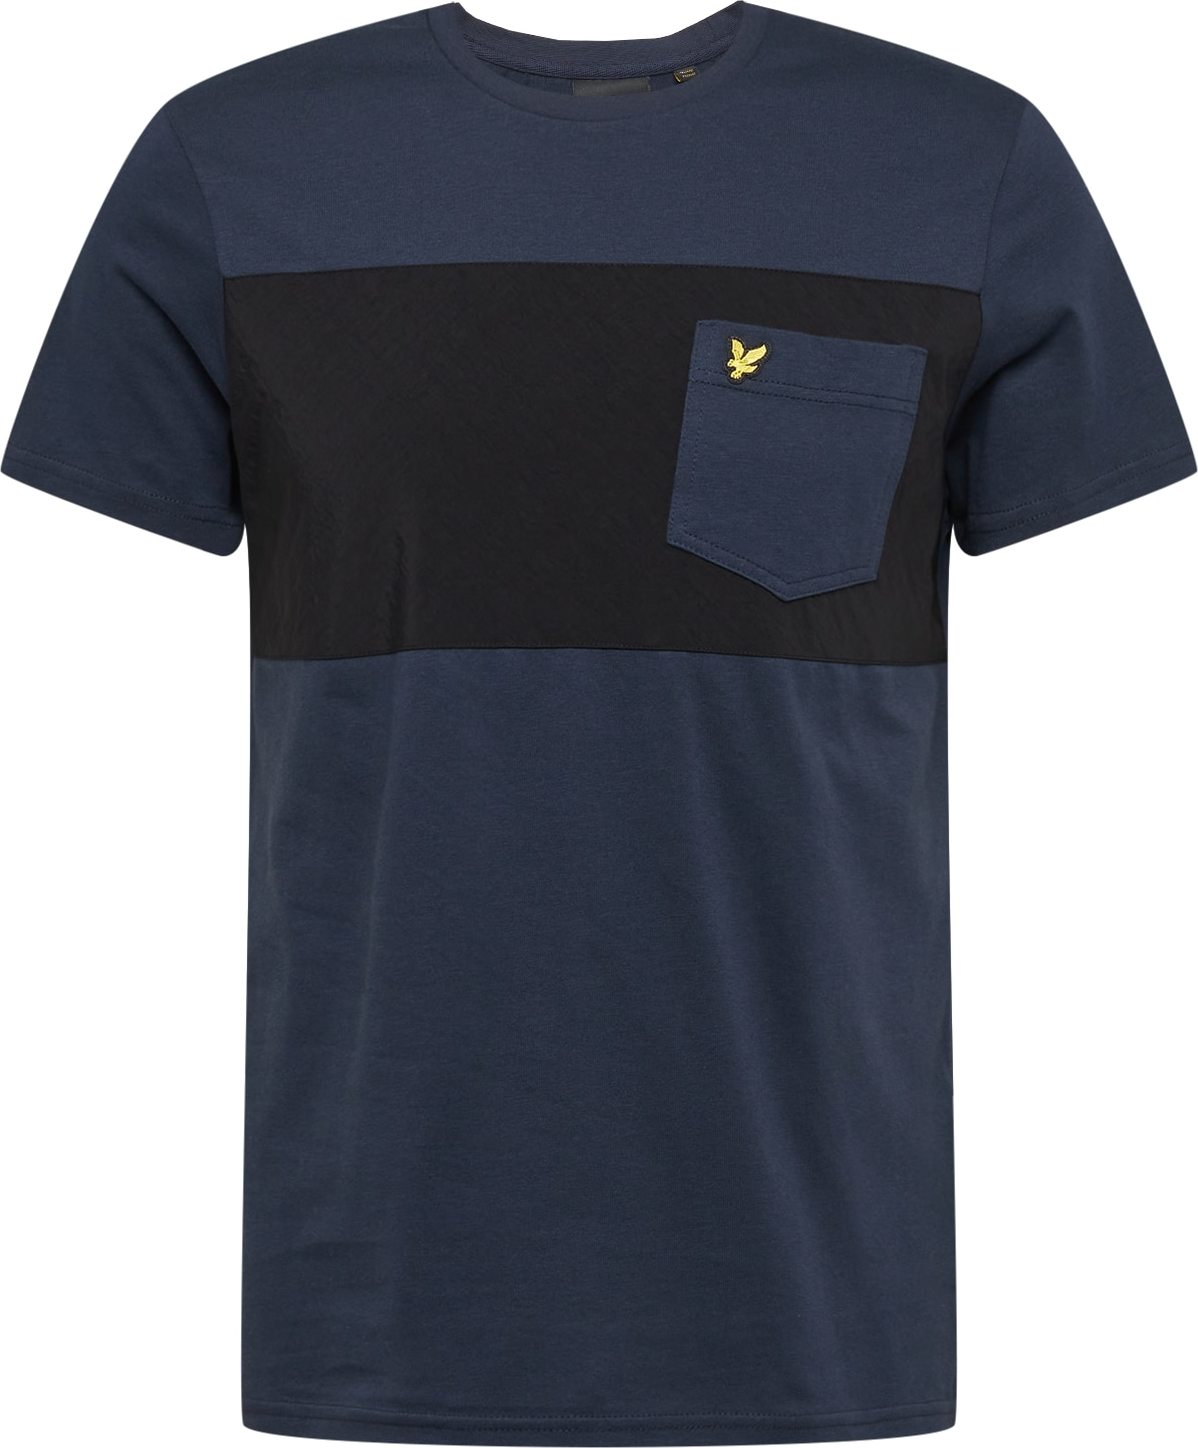 Tričko Lyle & Scott námořnická modř / žlutá / černá